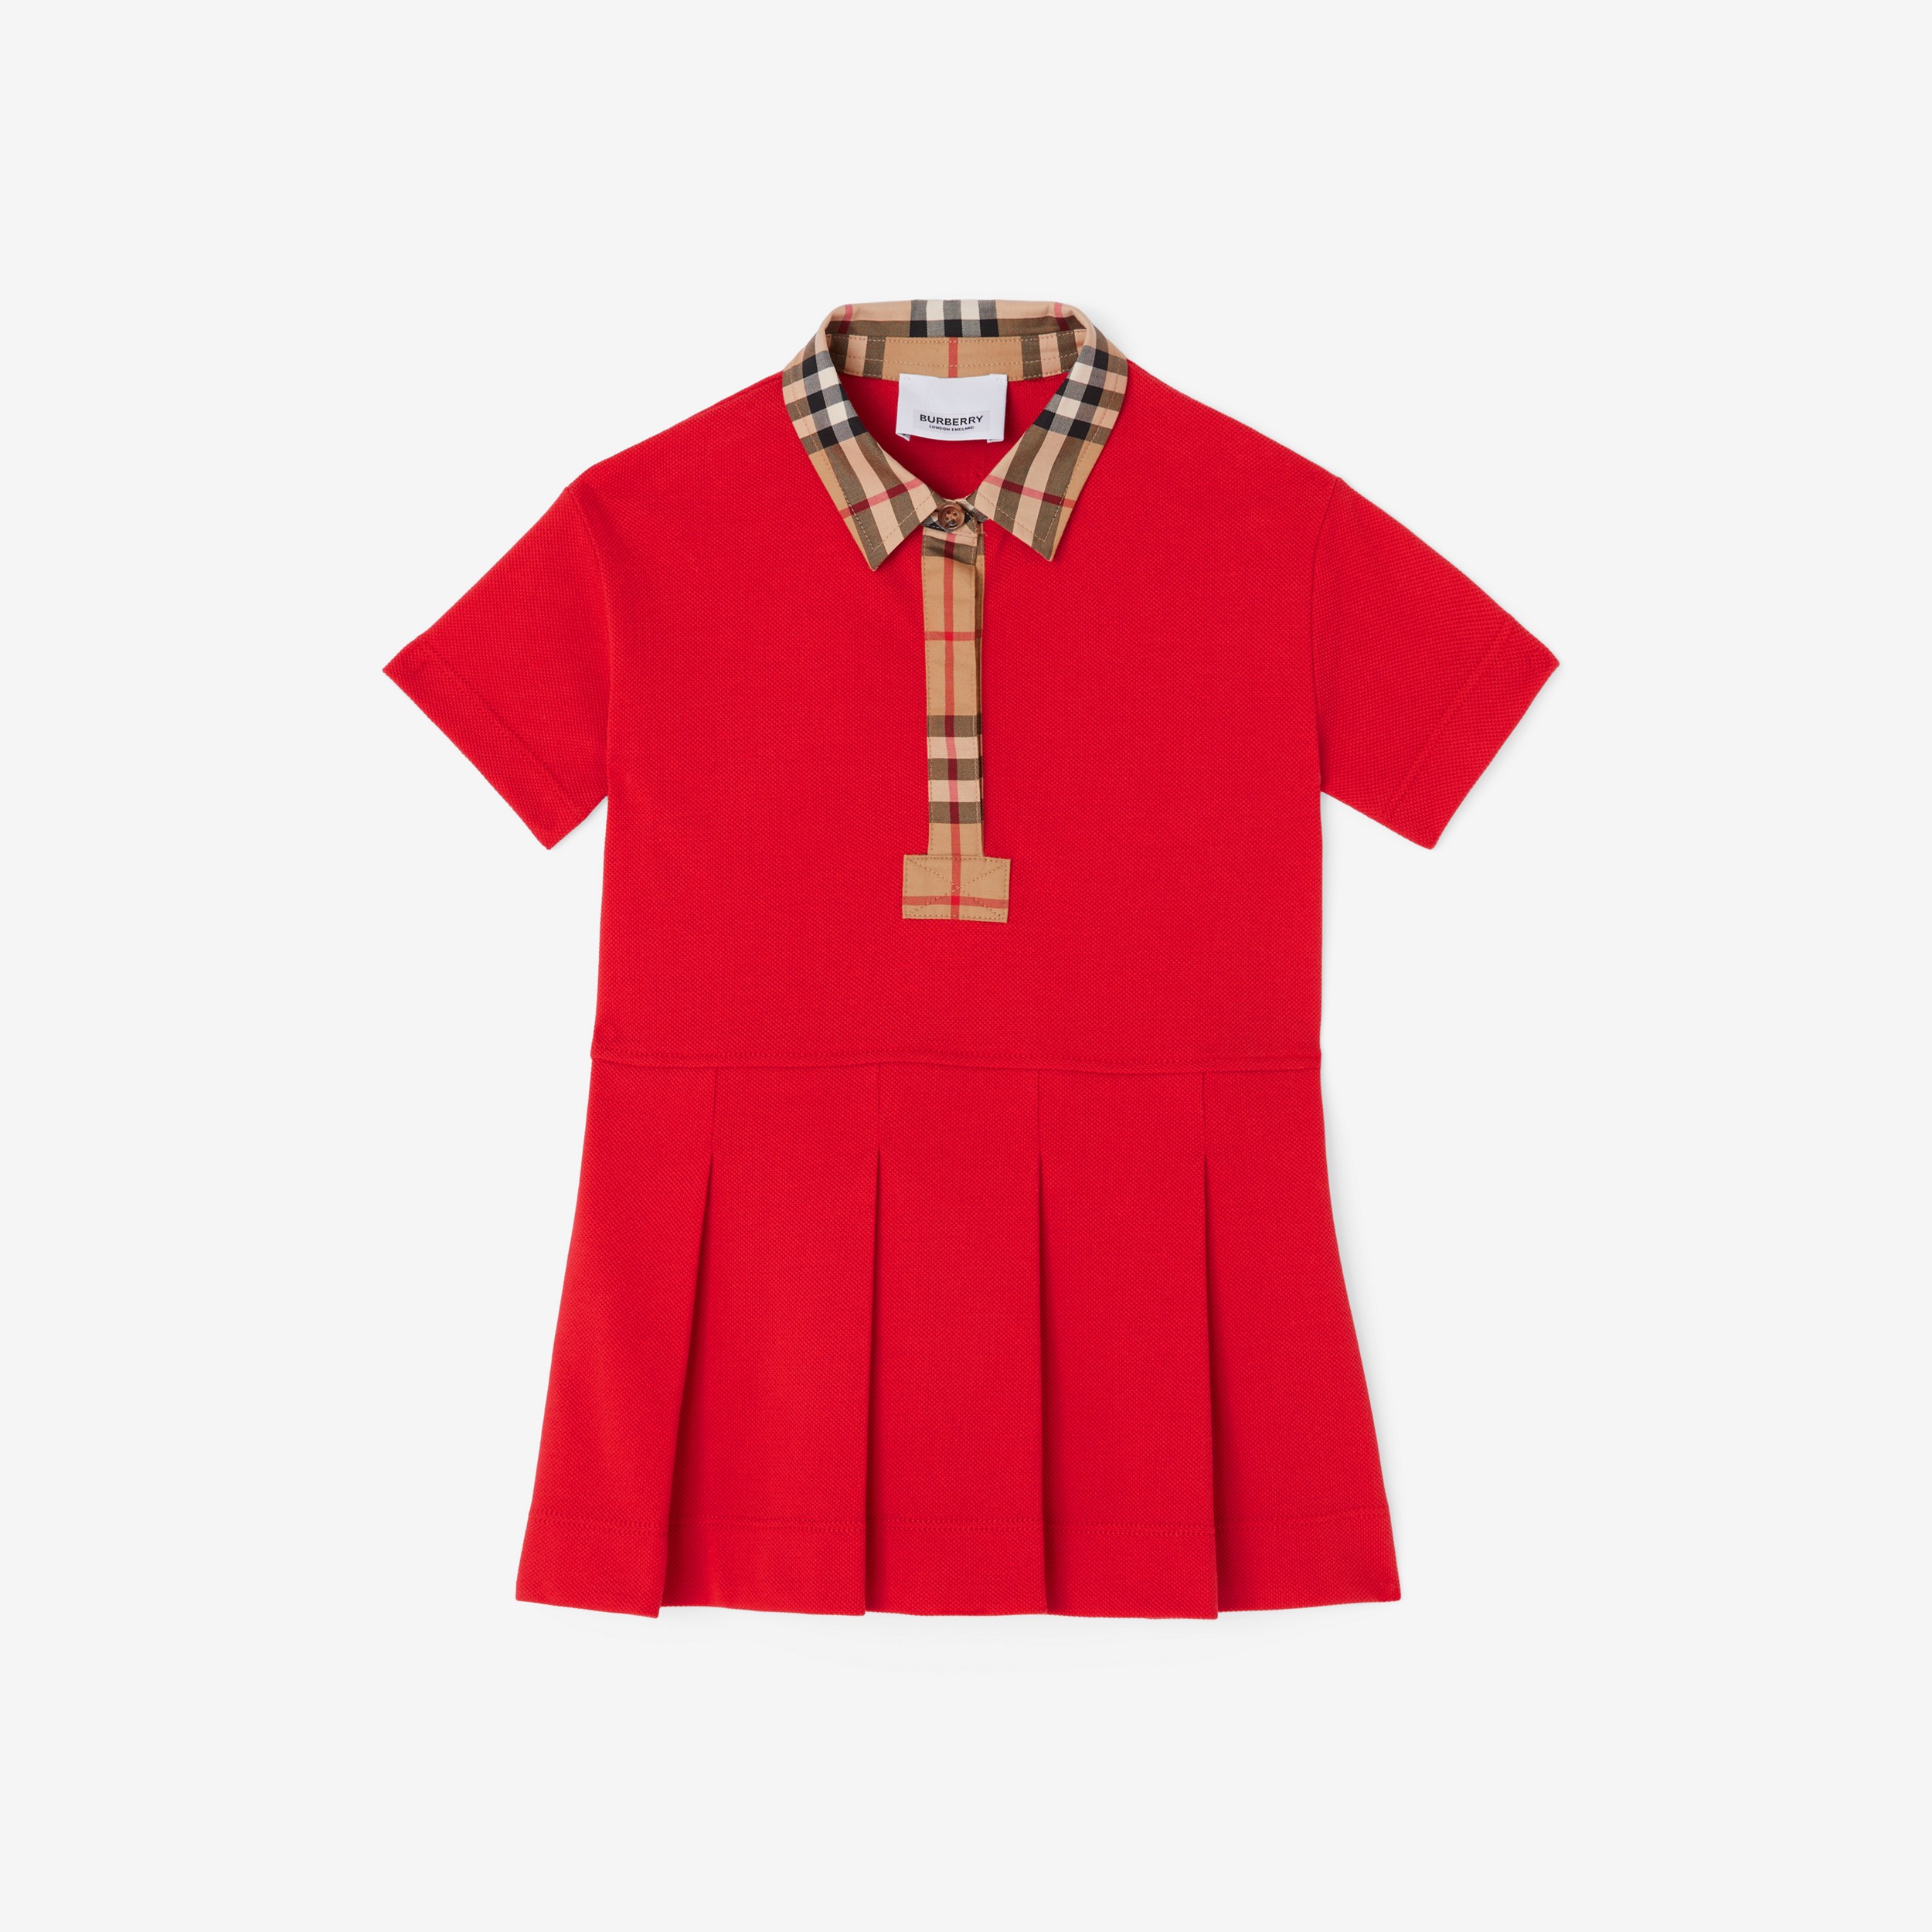 Baumwollpiqué-Poloshirtkleid mit Vintage Check-Besatz (Leuchtendes Rot) - Kinder | Burberry® - 1